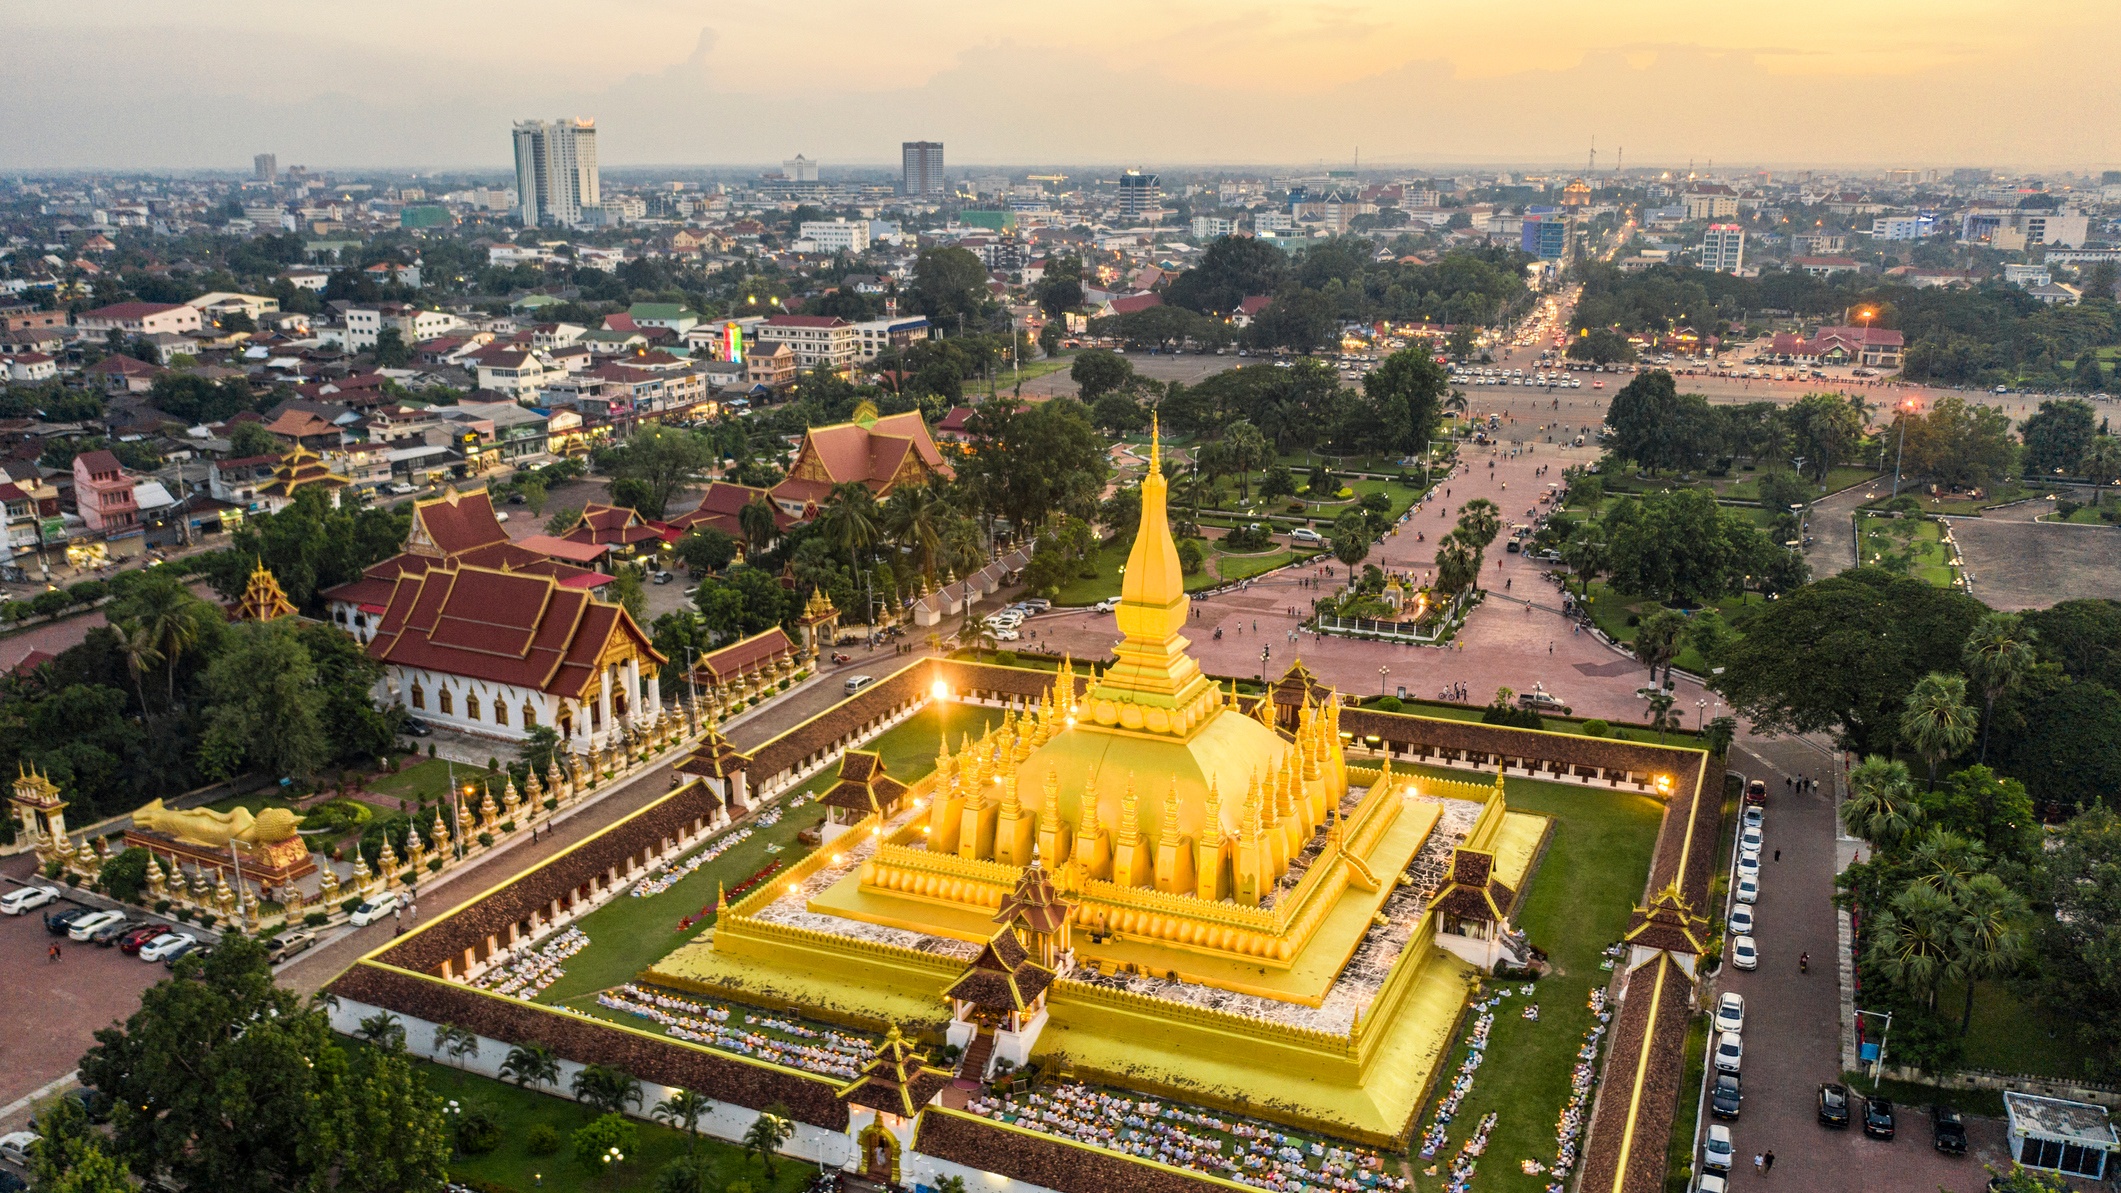 Bỏ túi kinh nghiệm du lịch thủ đô Lào - ảnh 6